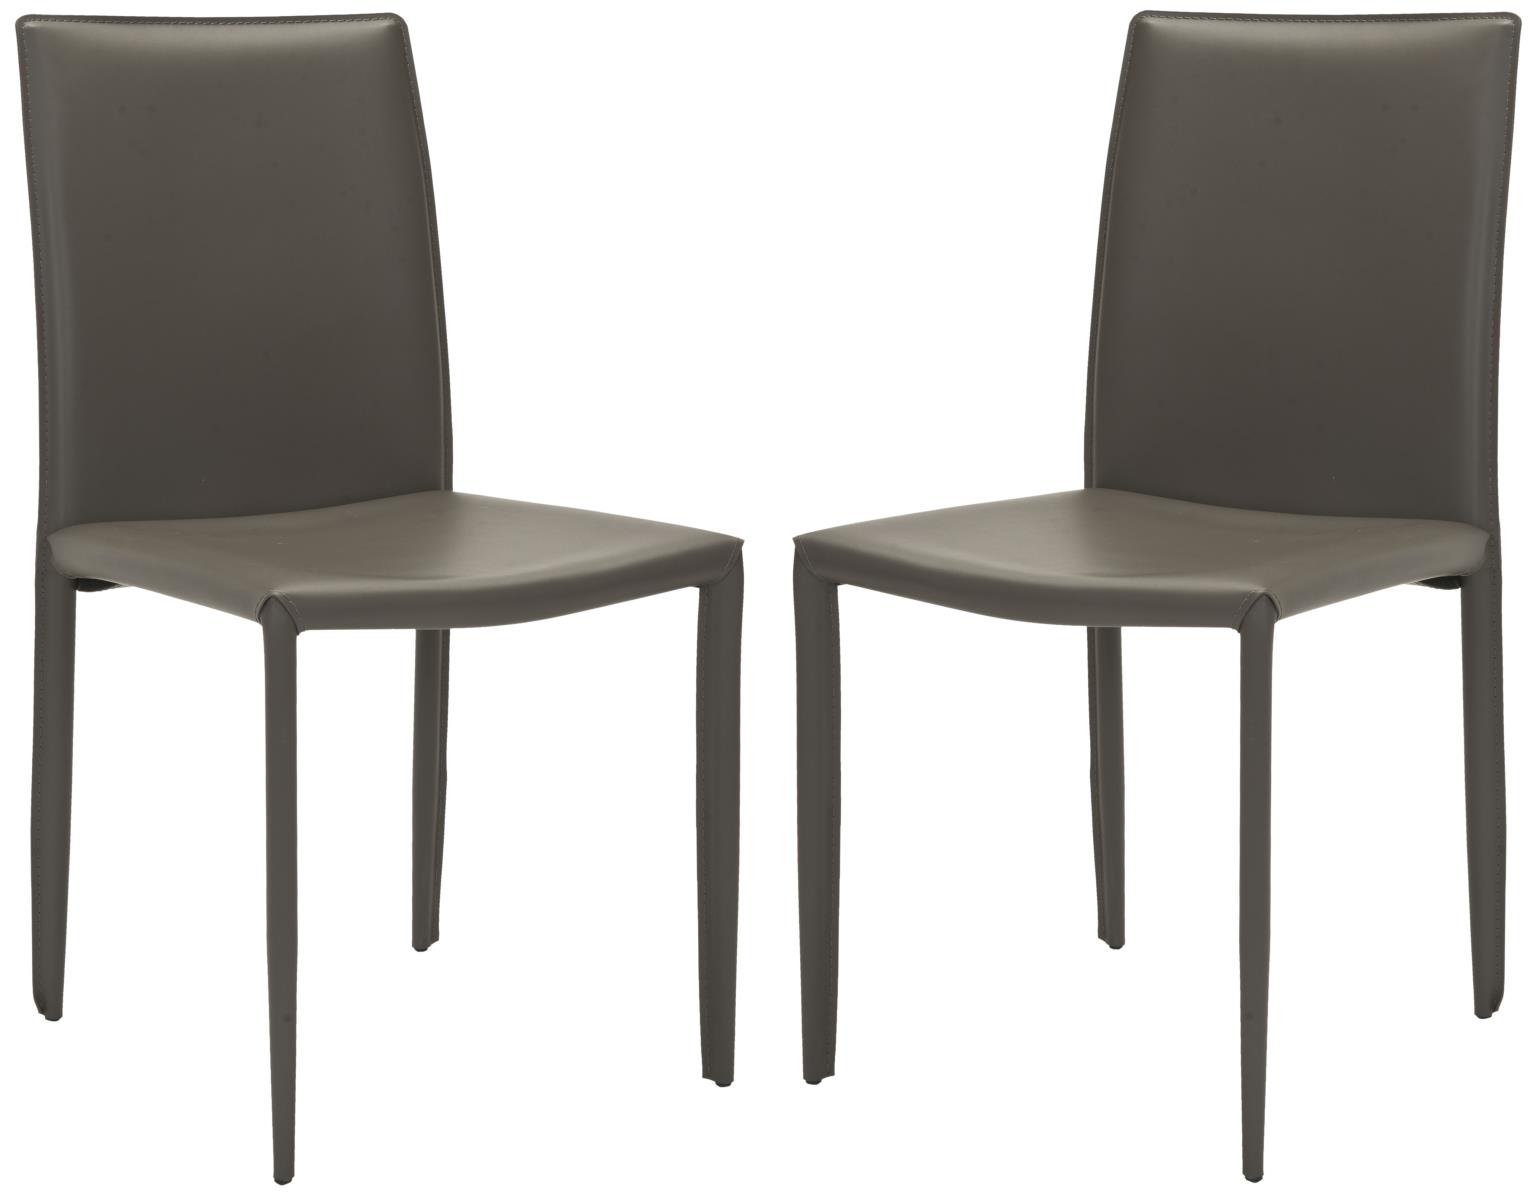 Chaise de table en métal et cuir gris charbon (x2)